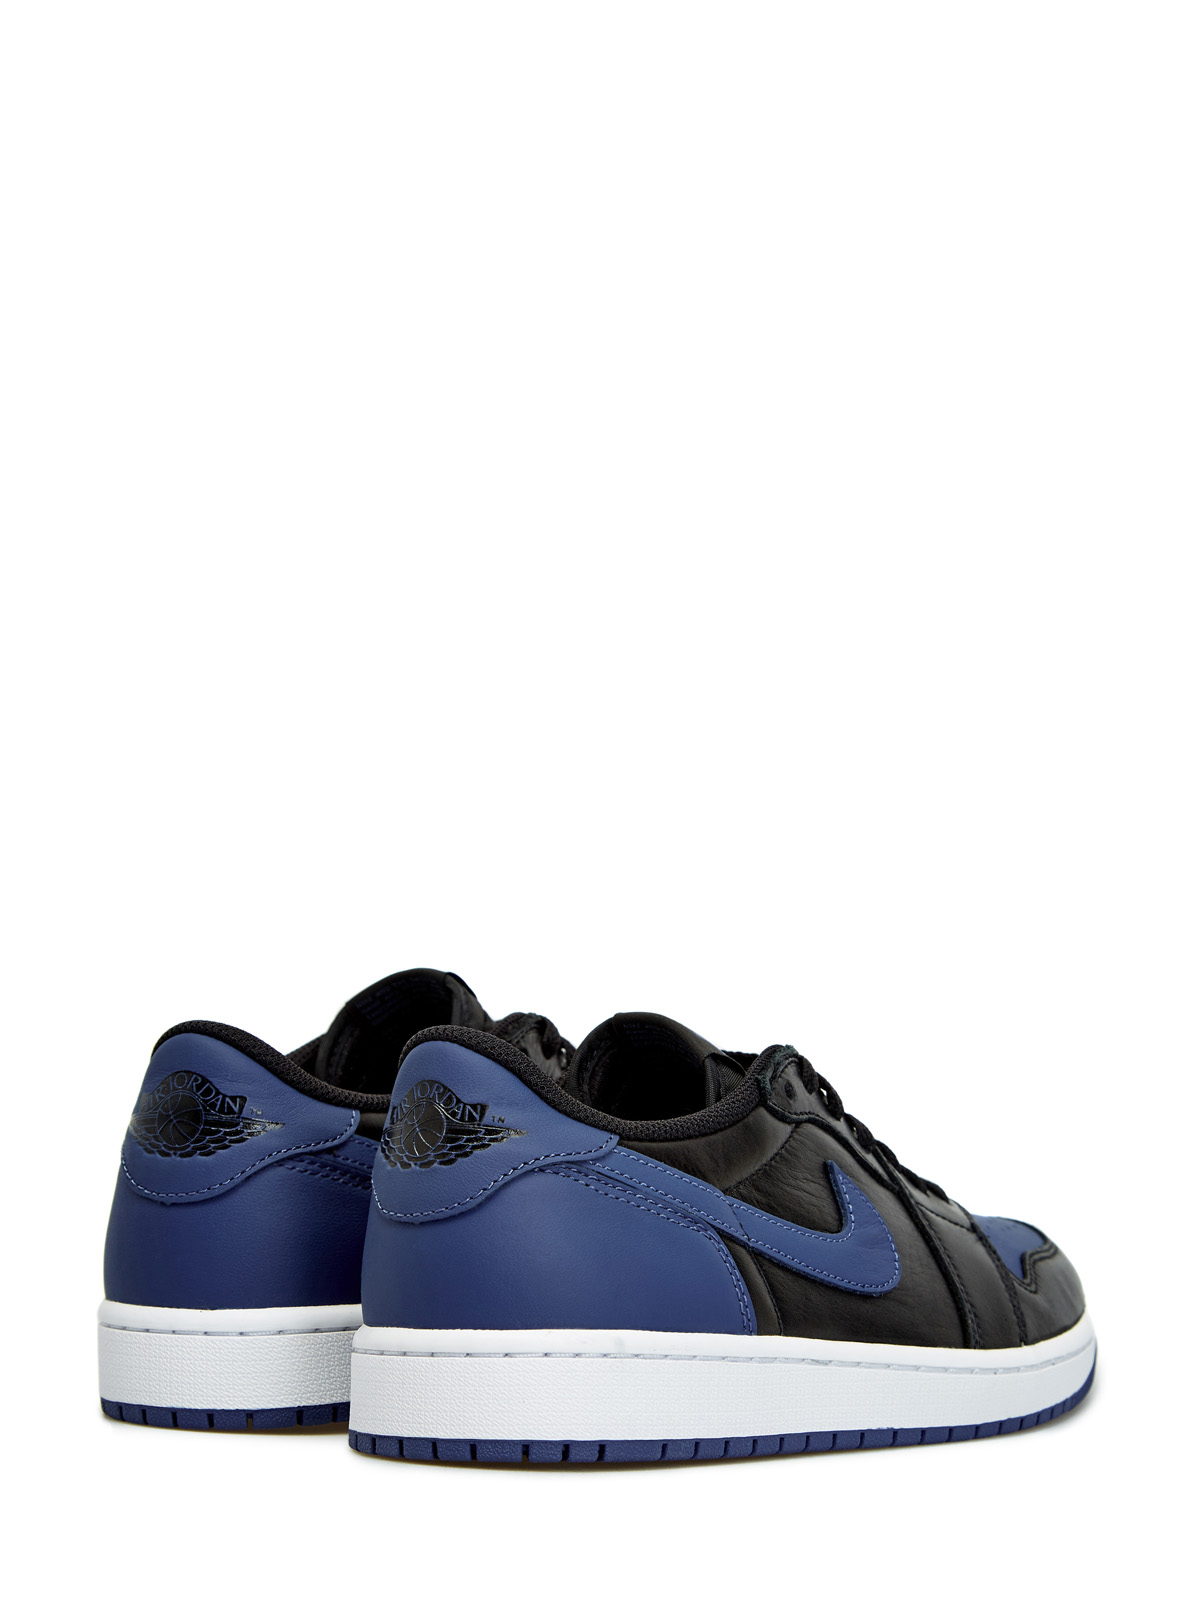 Кроссовки Jordan 1 Retro Low OG 'Mystic Navy' Jordan, цвет синий, размер 44.5;45.5 - фото 3